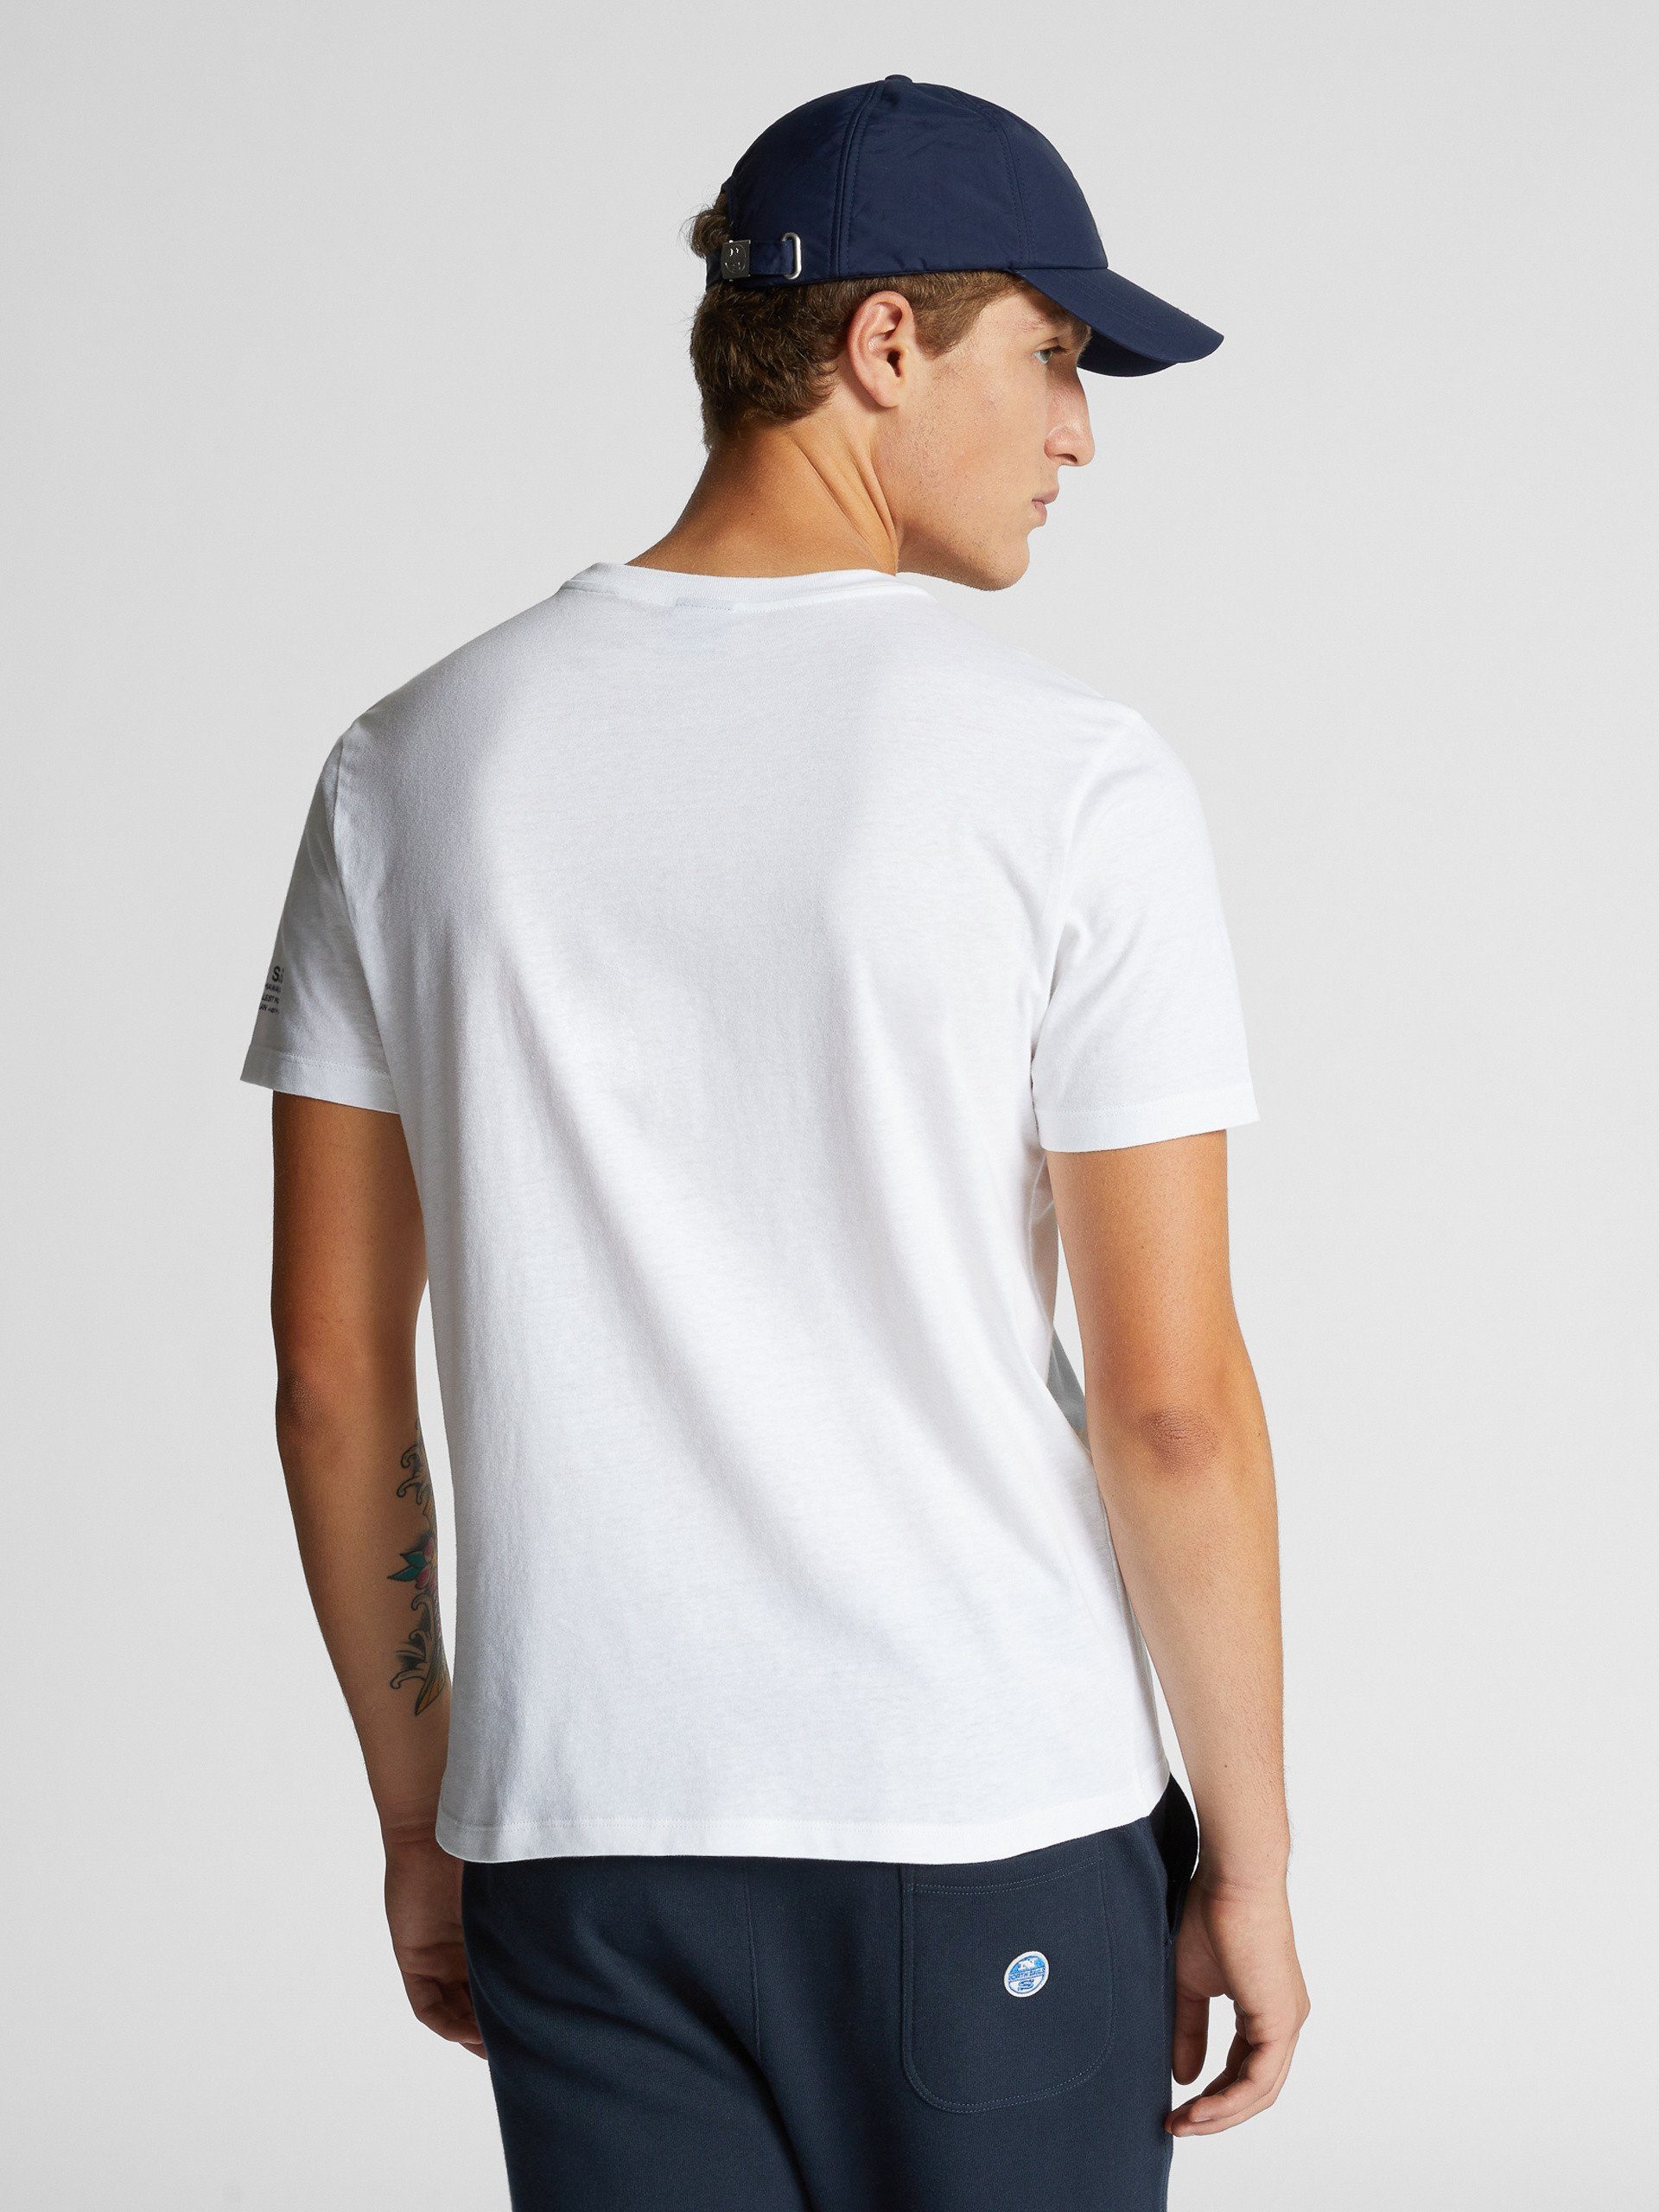 Grafikdruck North Rundhals und T-Shirt WHITE mit Sails T-Shirt